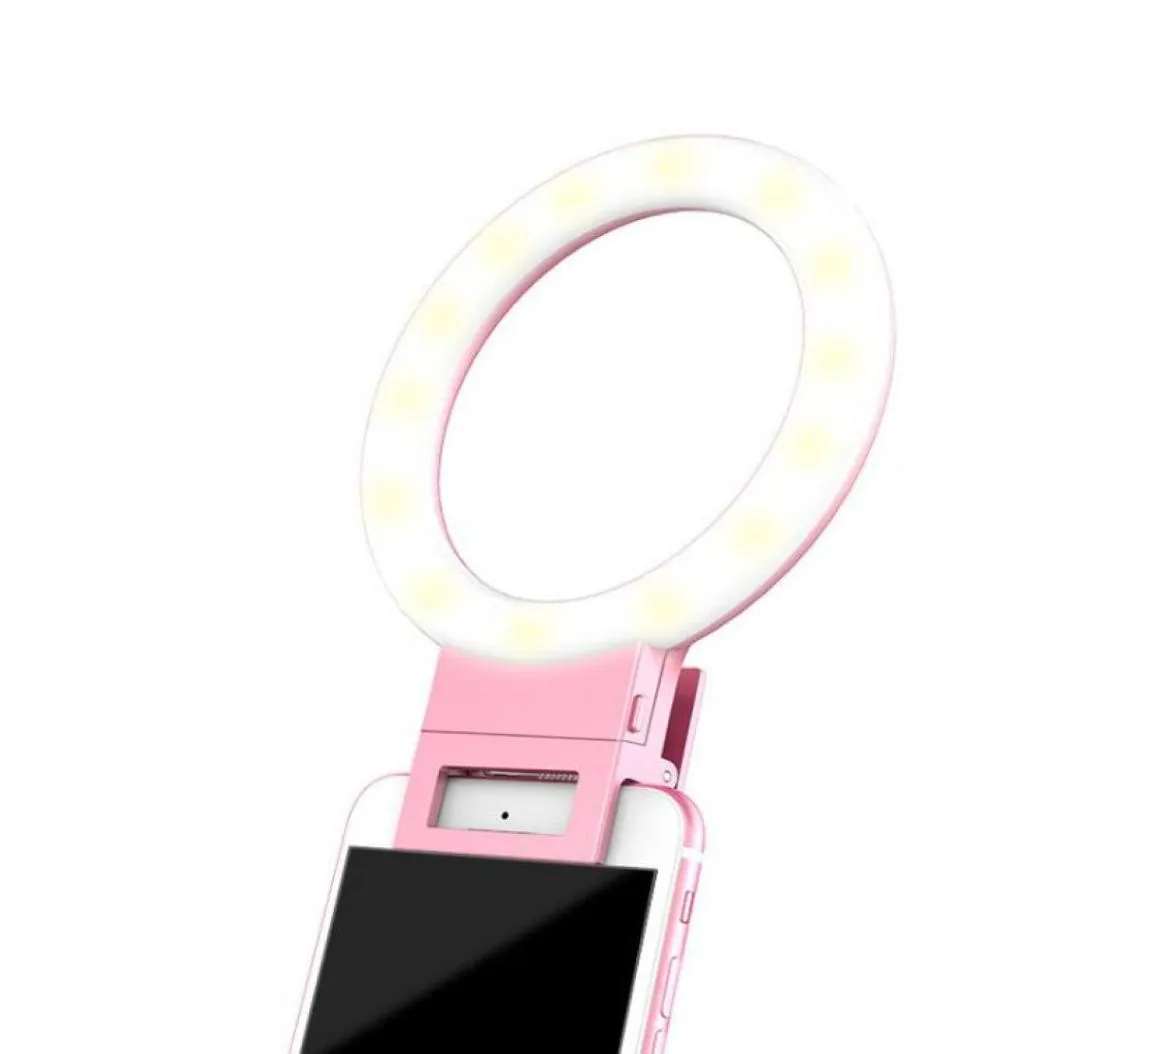 セルフィーリングライトライトUSB充電iPhoneのセルフィーライト照明照明照明ナイトダークネスライトリングスマートフォン用ライトリング1105299